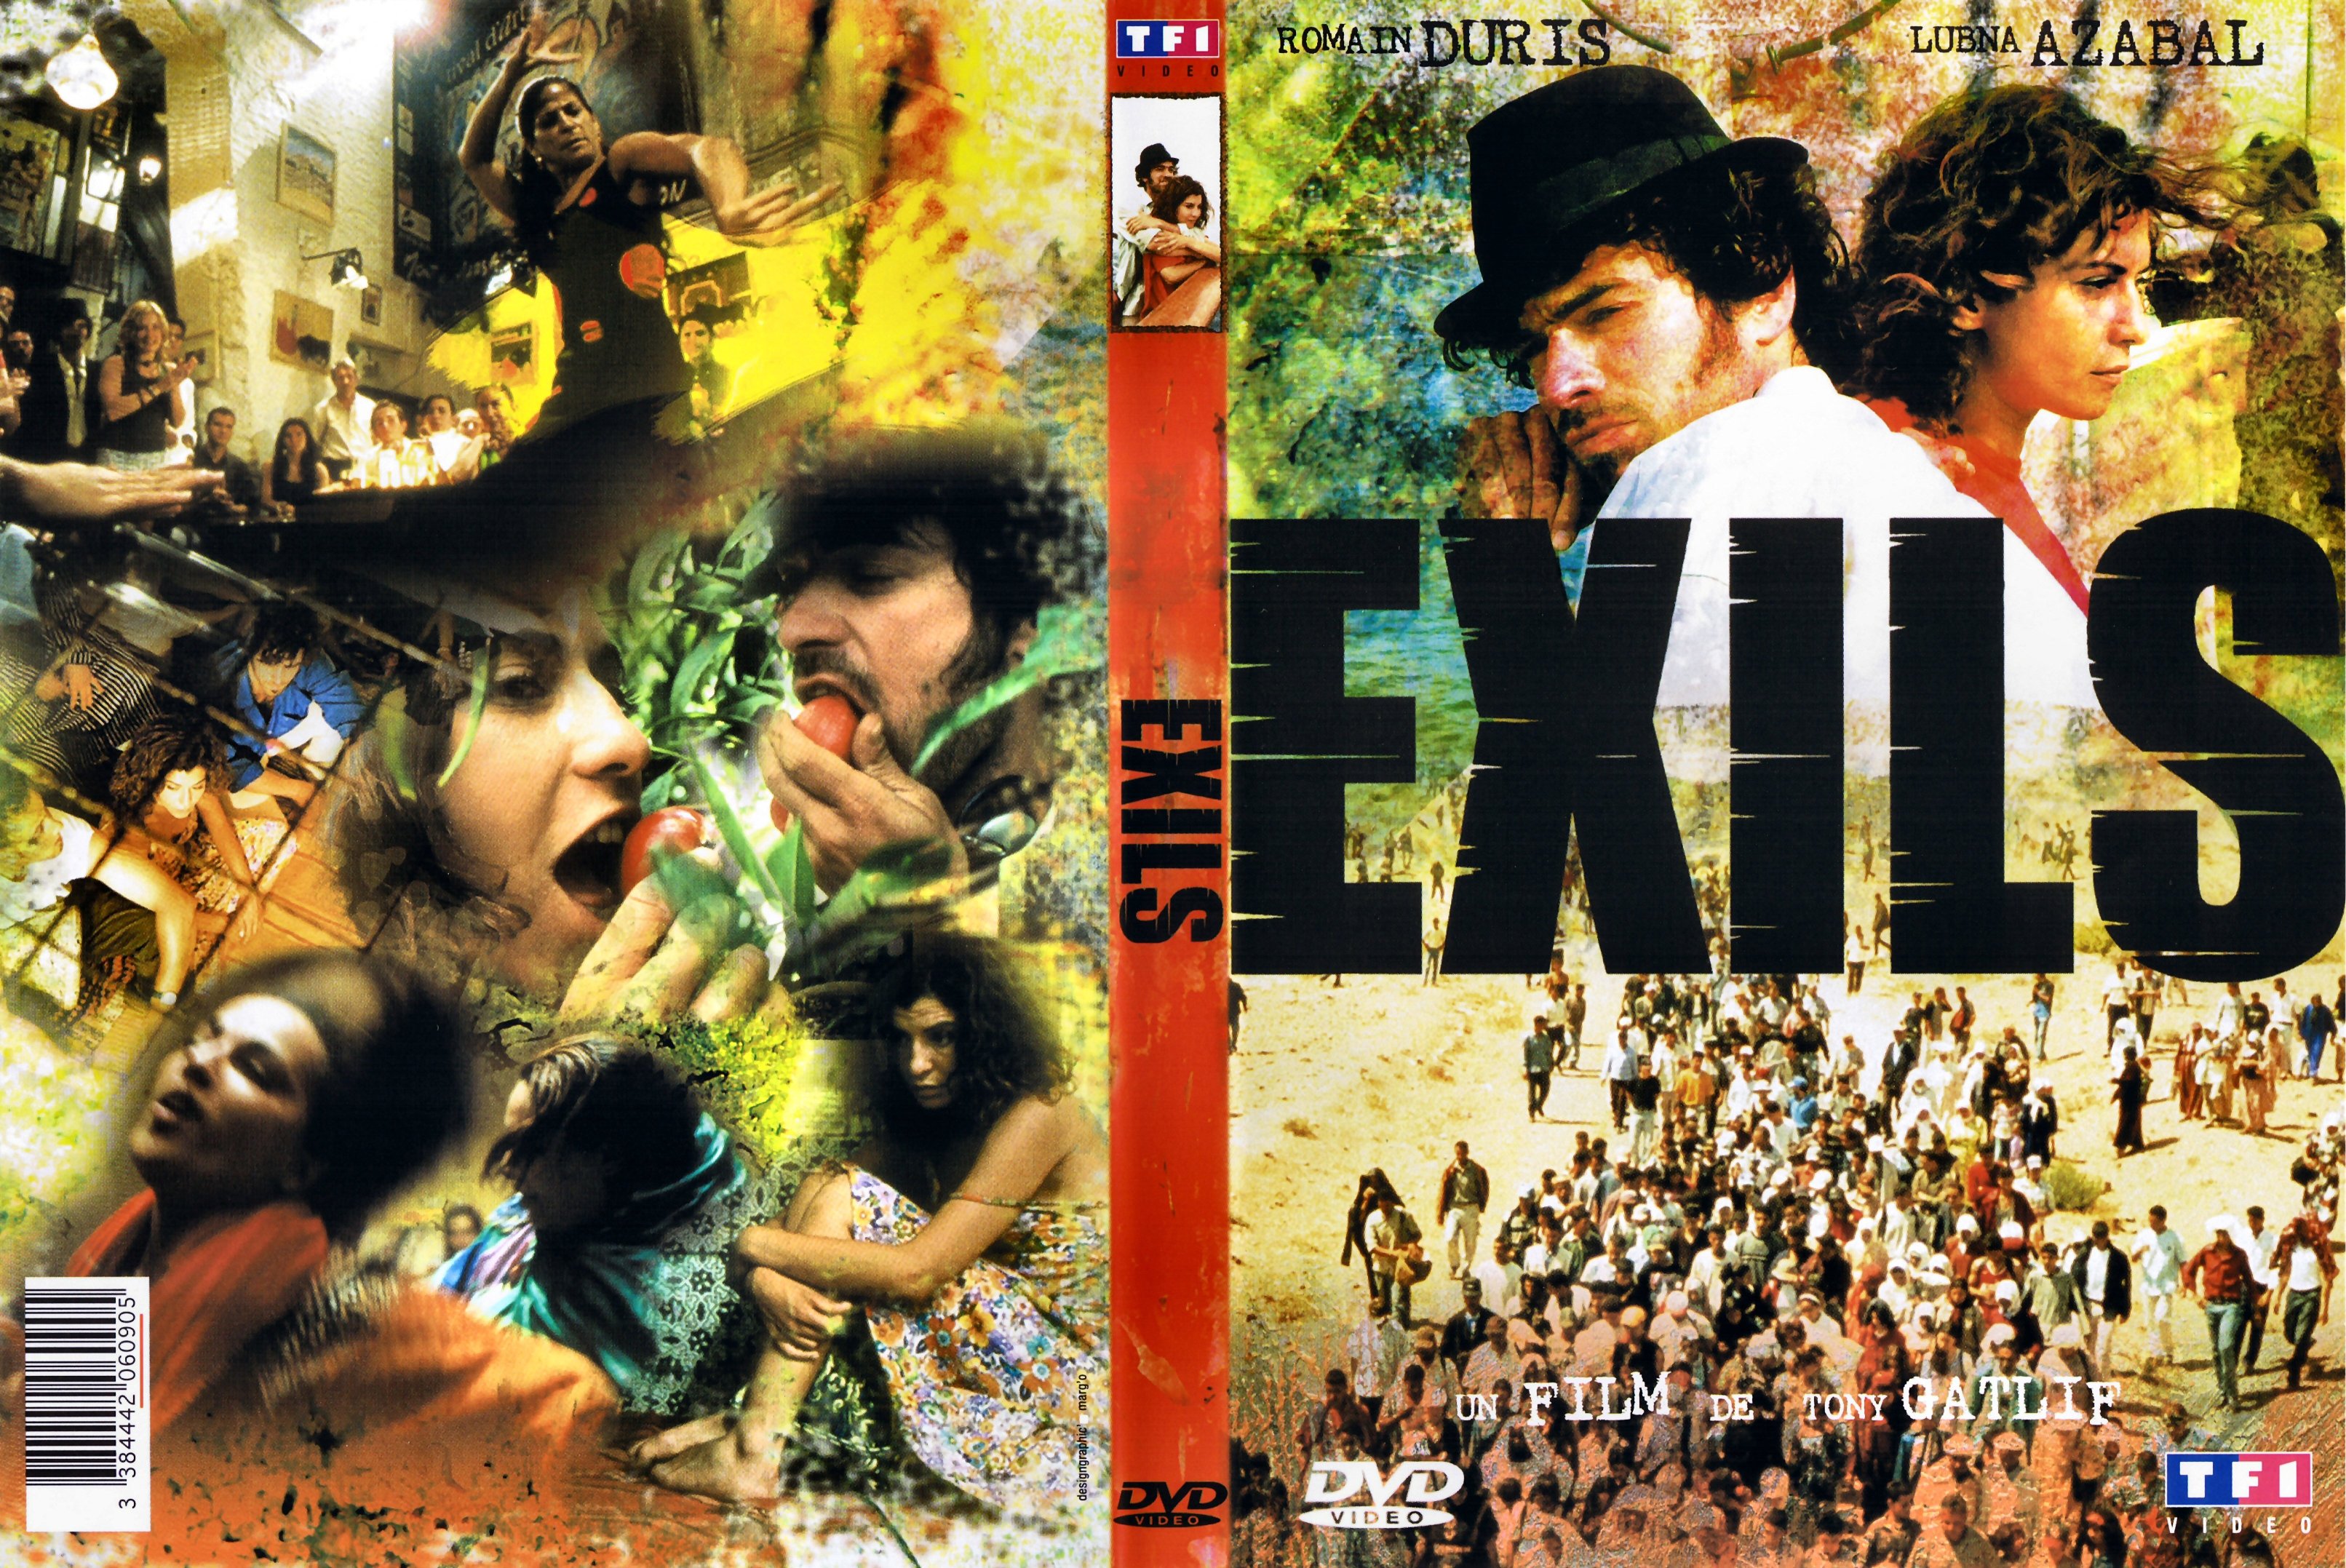 Jaquette DVD Exils v2